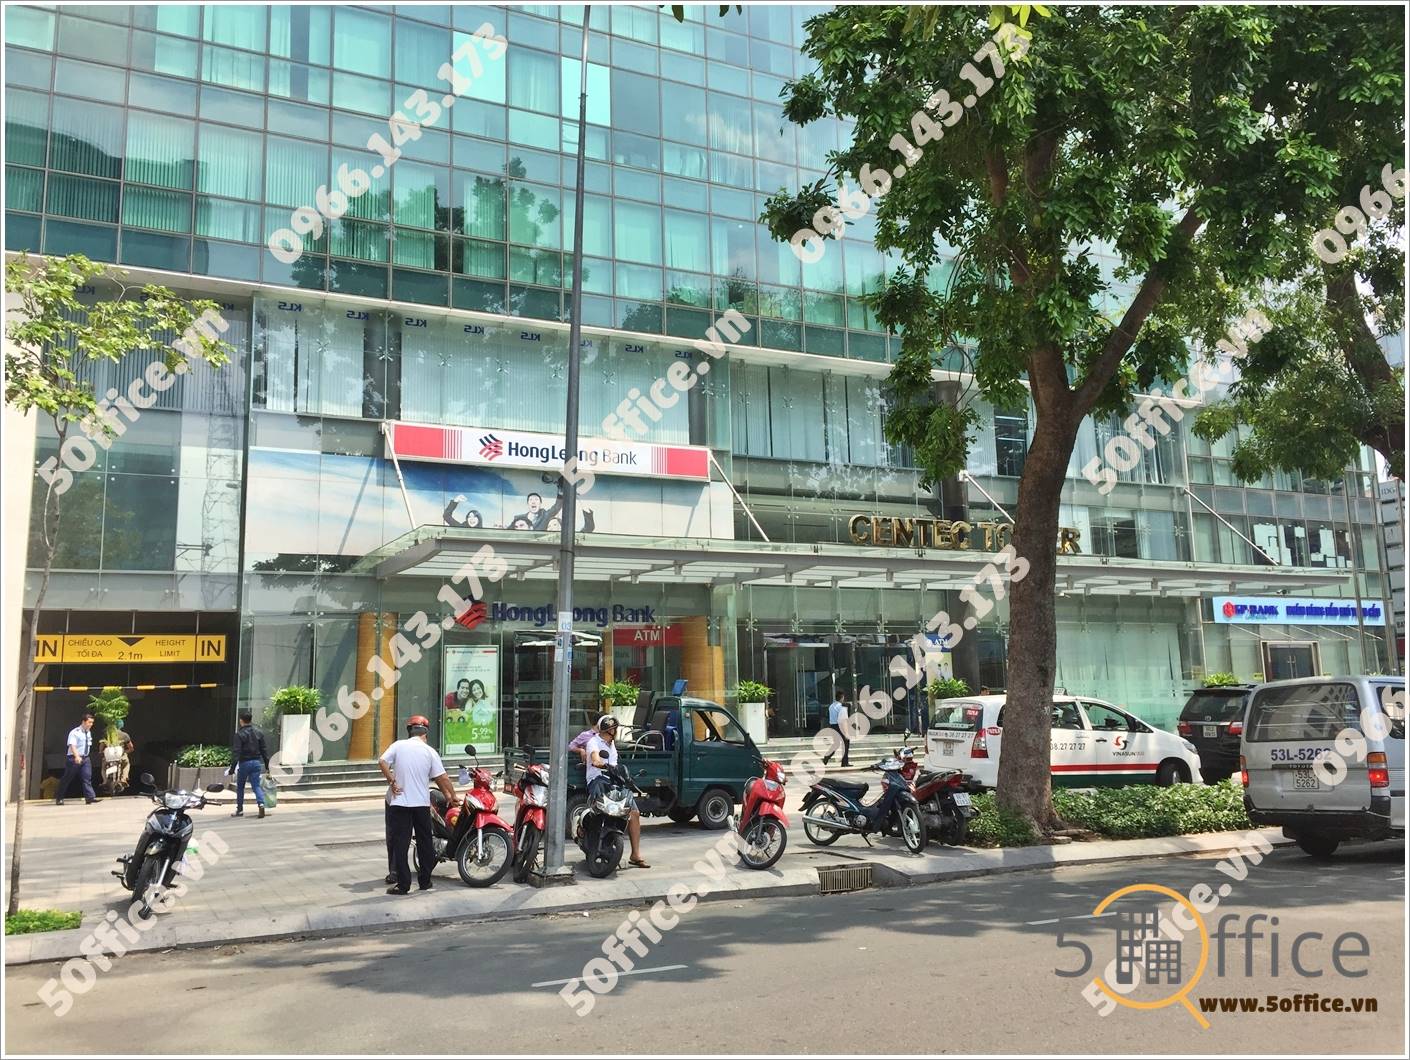 Cao ốc cho thuê văn phòng Centec Tower, Nguyễn Thị Minh Khai, Quận 3, TPHCM - vlook.vn